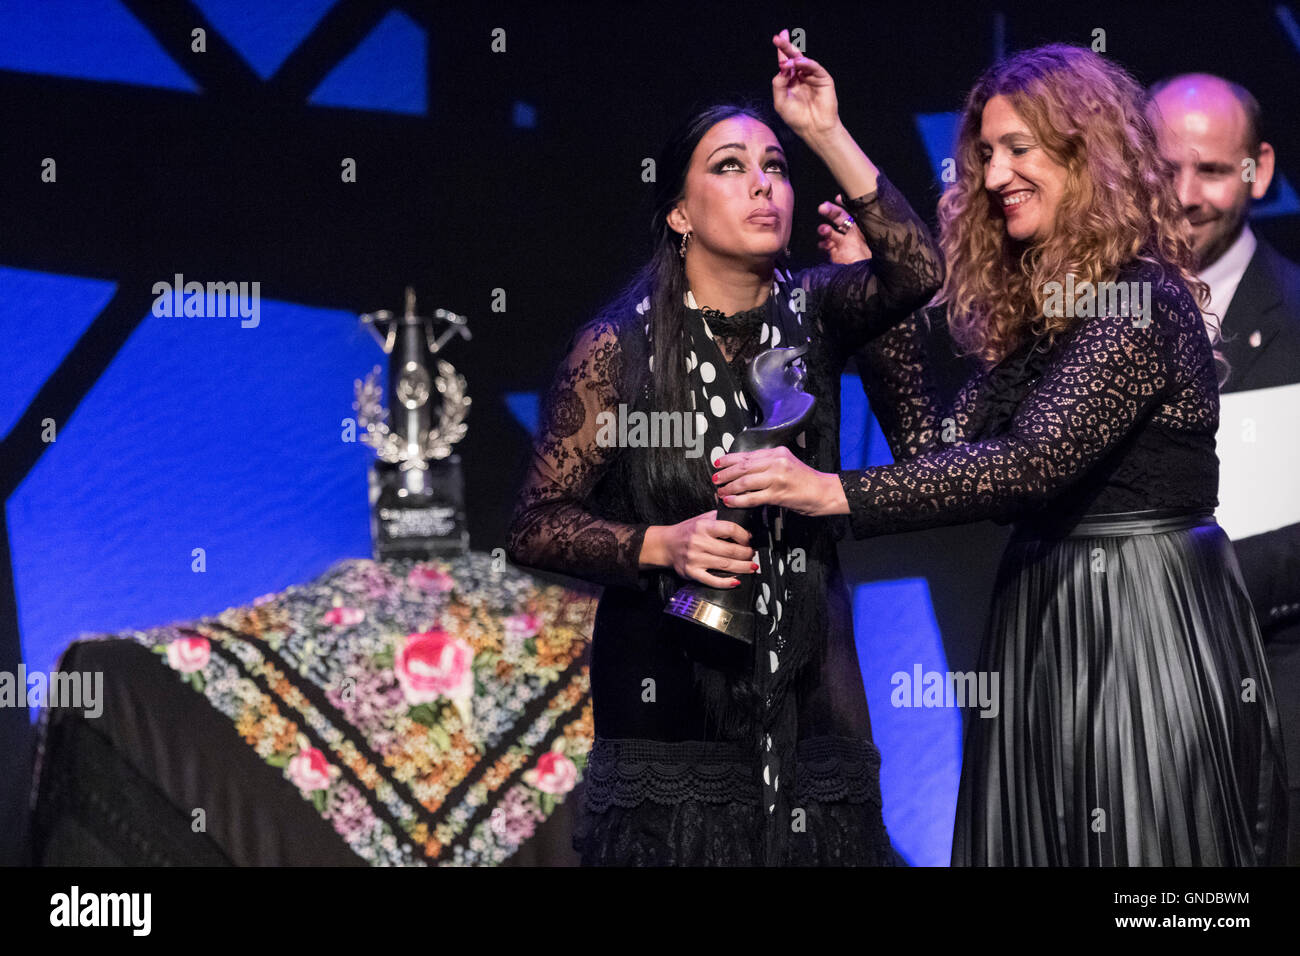 La Unión, Spain. 14th August, 2016. Flamenco dancer Belén López wins the 'Desplante' trophy of the most important Flamenco Festi Stock Photo